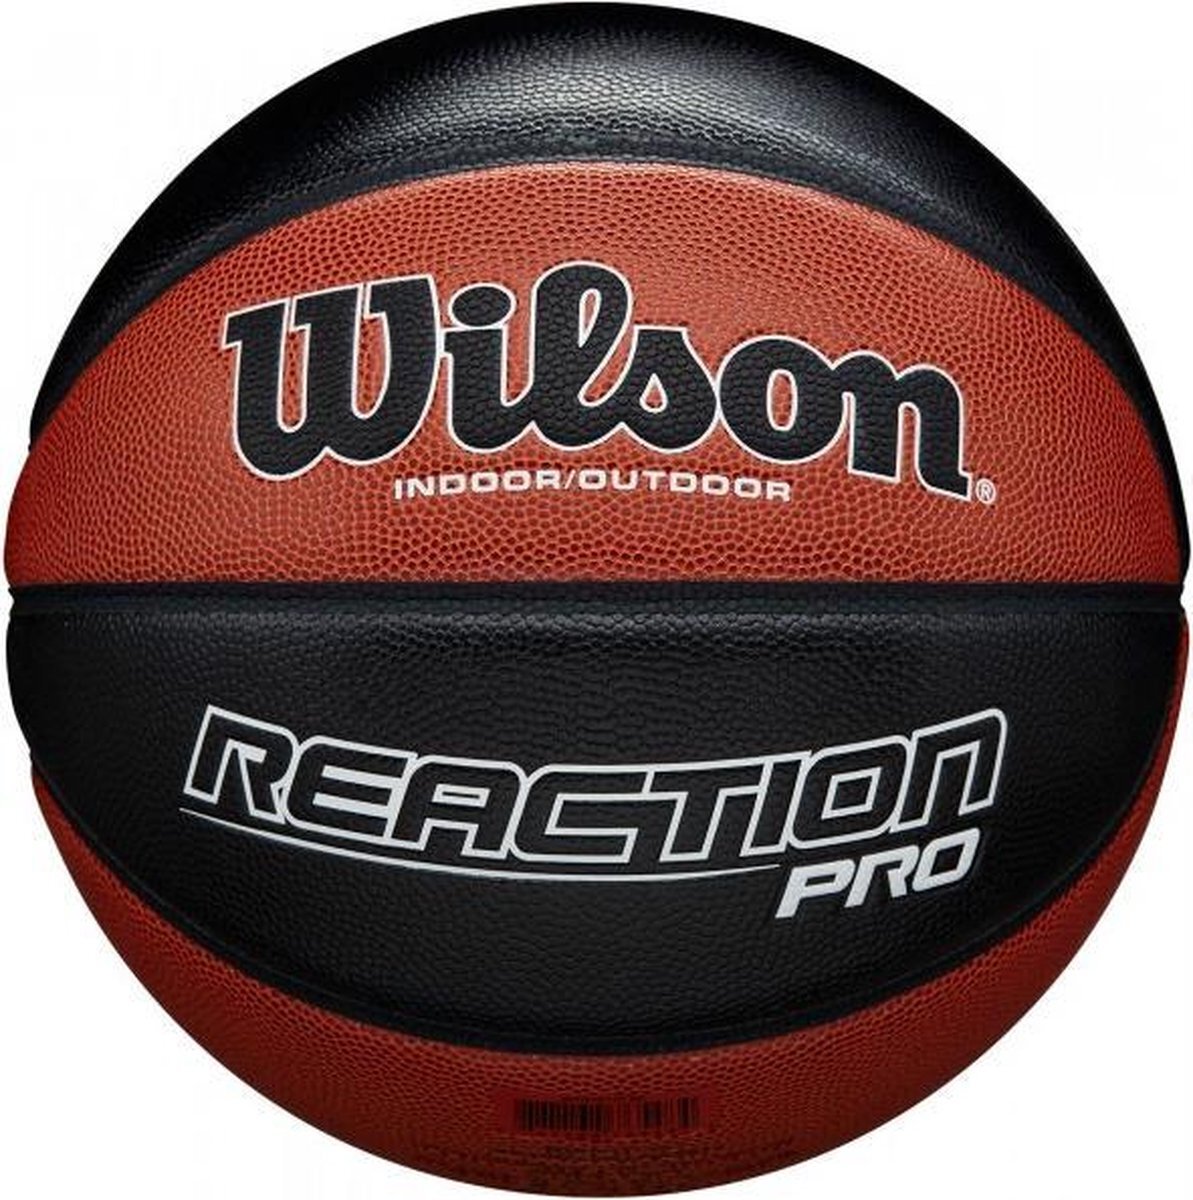 Wilson Reaction Pro Basketbal - Indoor/Outdoor - Bruin - Official Size